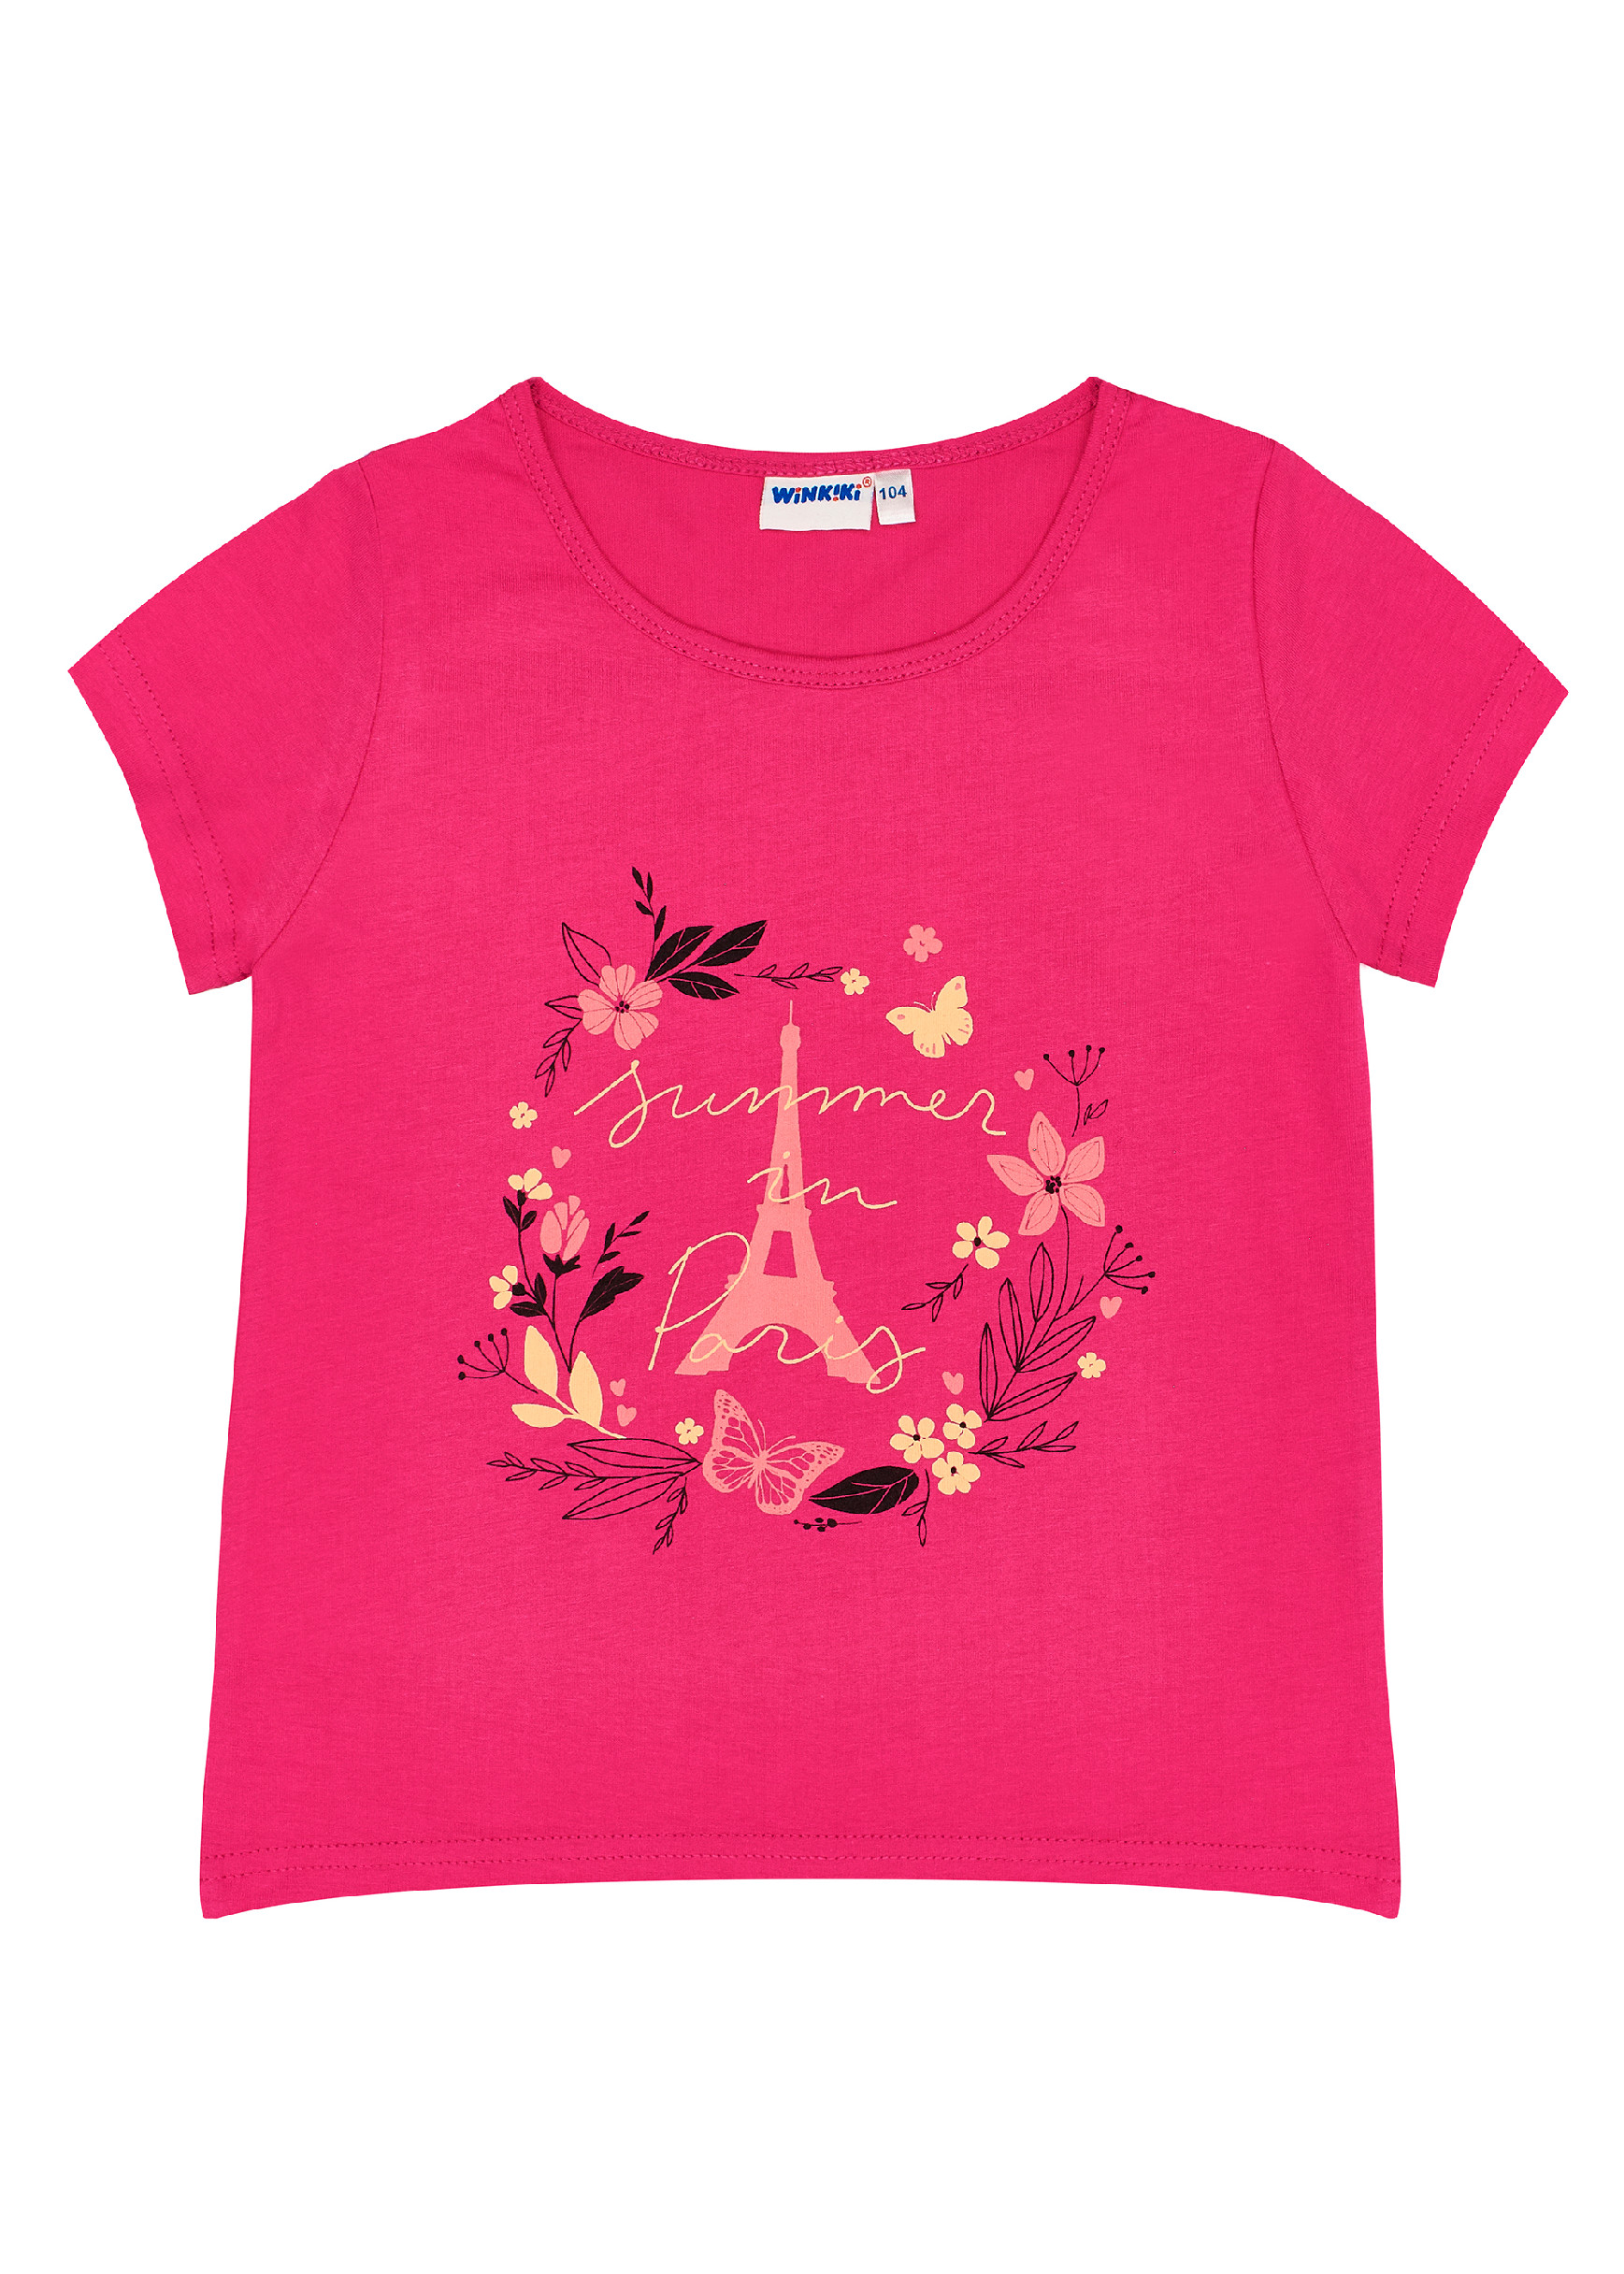 Dívčí tričko - Winkiki WKG 91362, sytě růžová Barva: Růžová tmavší, Velikost: 104